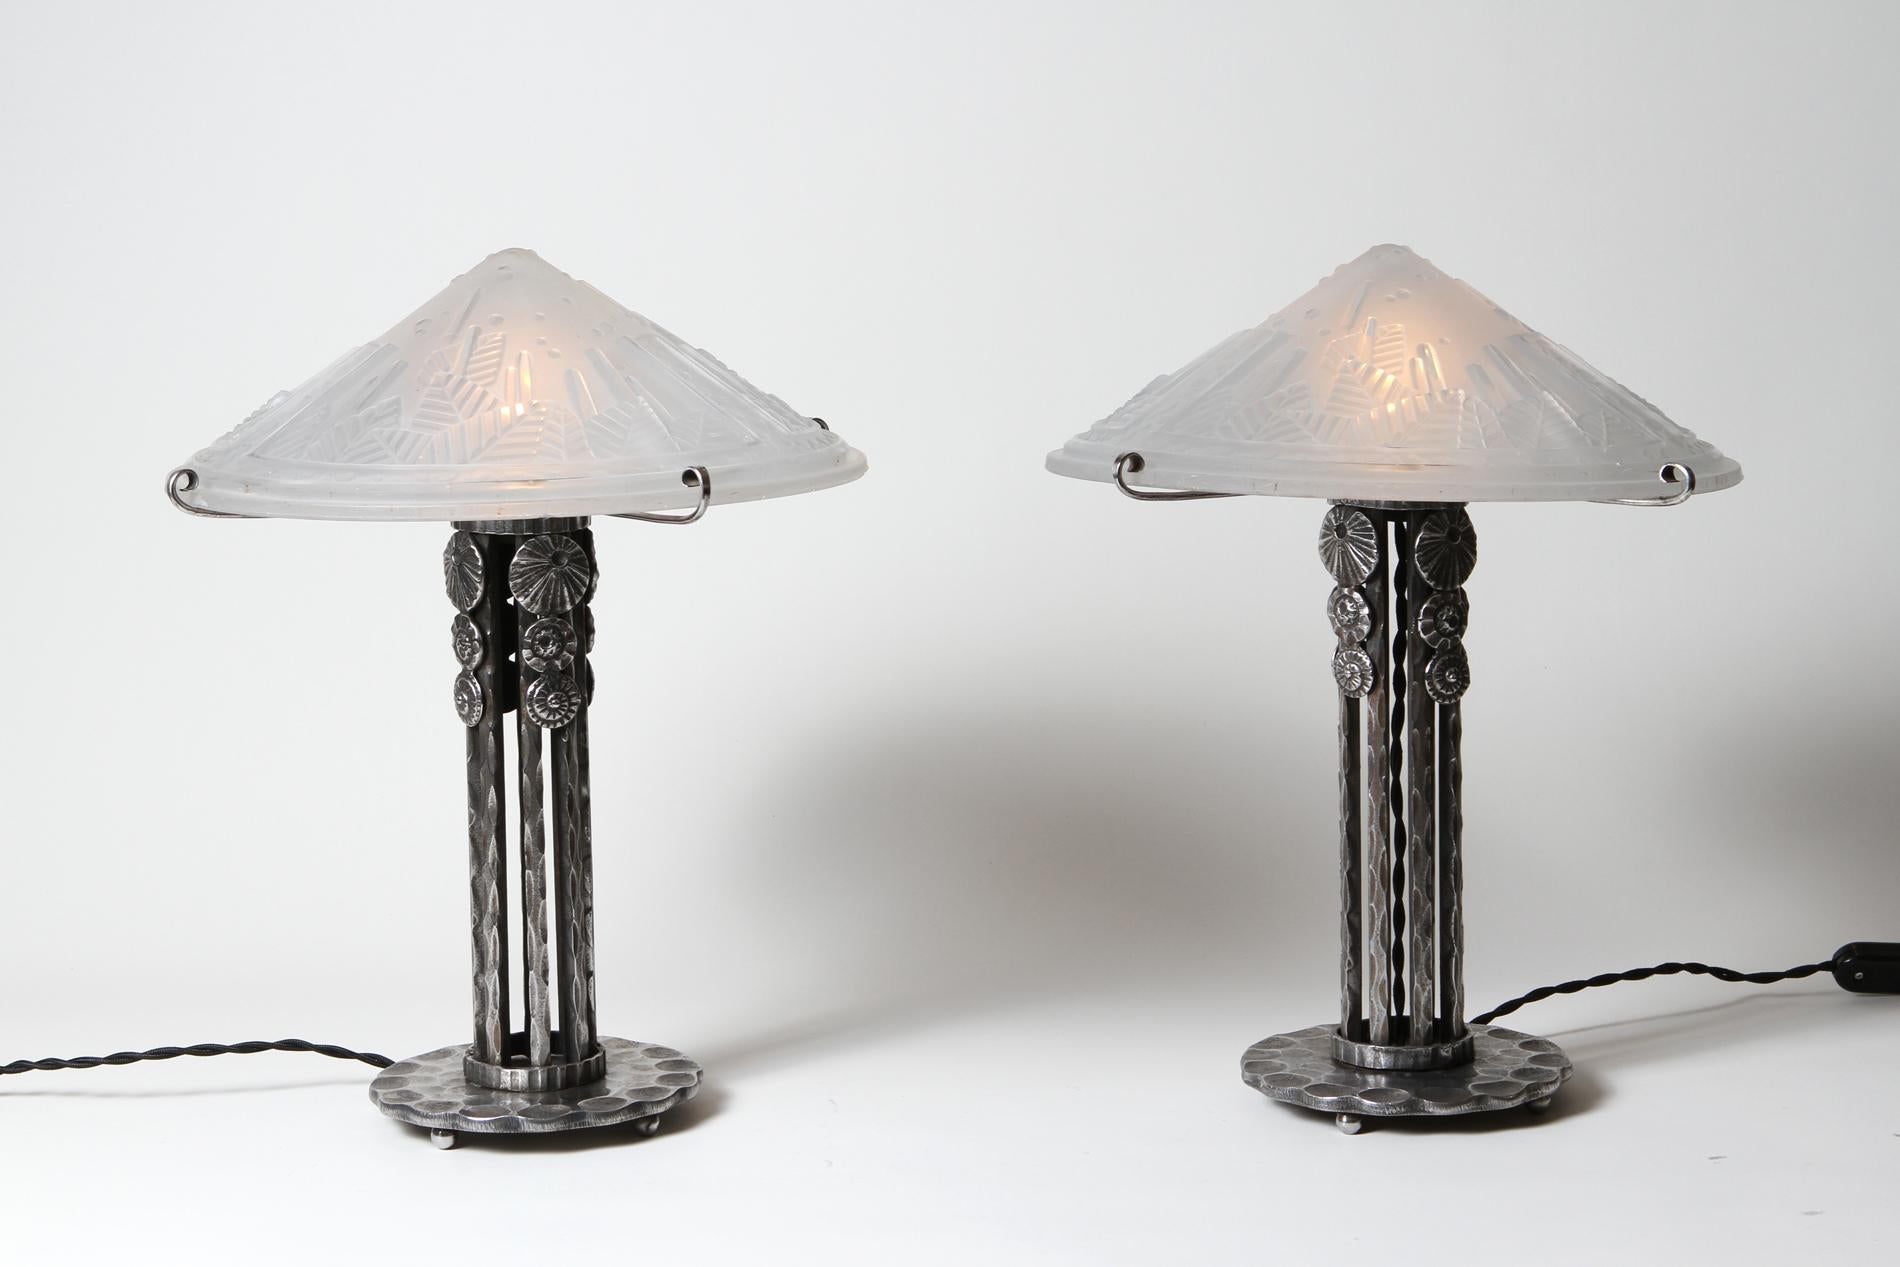 Paire originale de lampes de table Art Déco par Muller frères et base en fer forgé réalisée par M.VASSEUR membre du groupe de fer forgé 